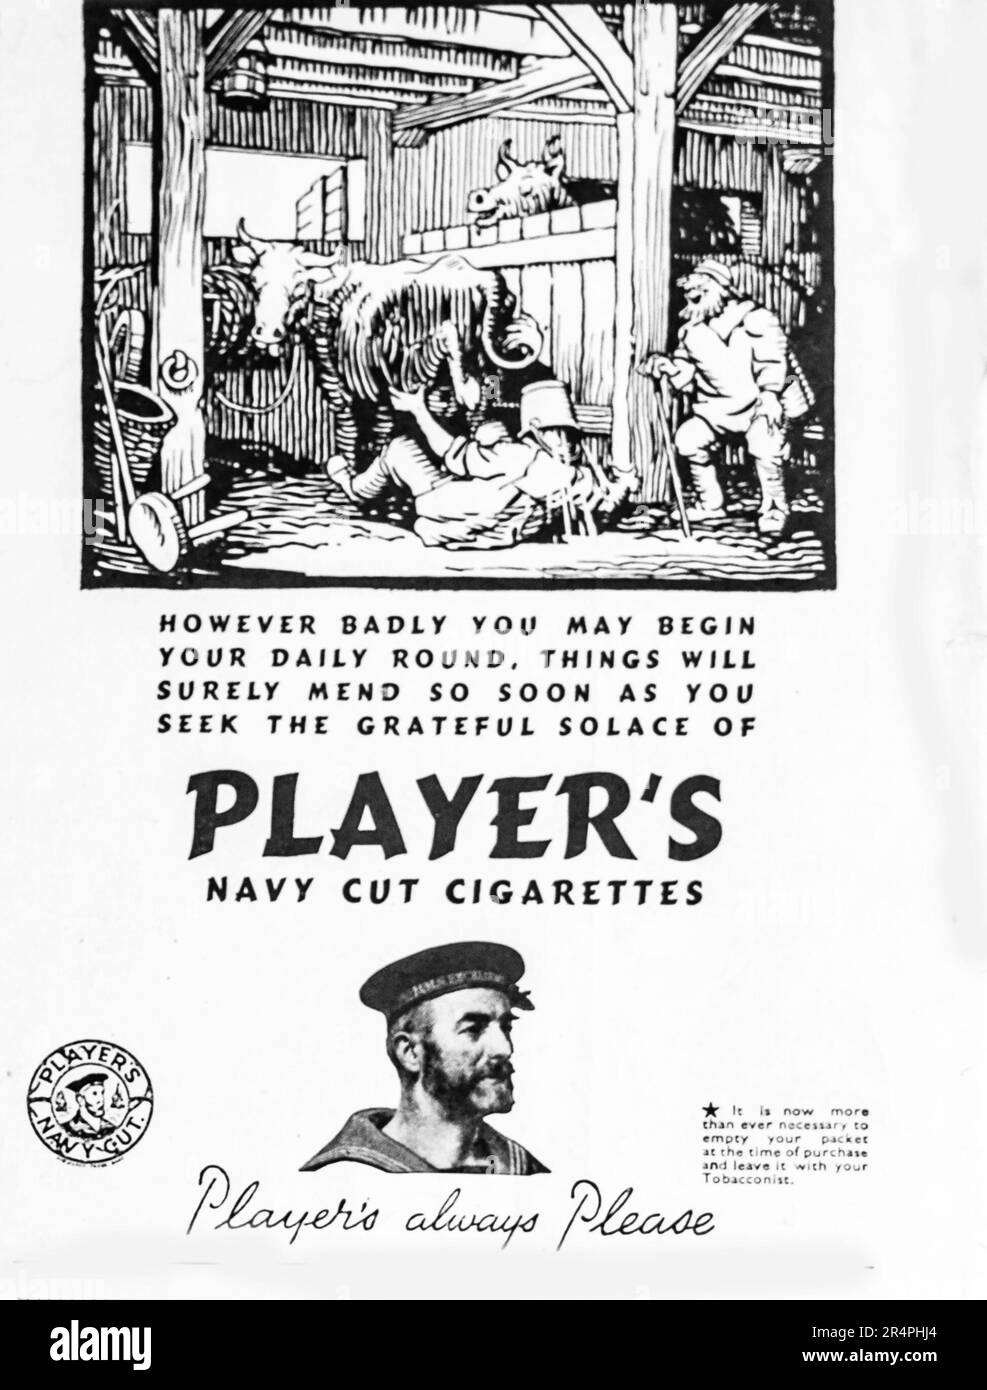 Eine 1941-Werbeanzeige für Players Navy Cut Cigarettes. Die Werbung zeigt einen Zeichentrickfilm eines Landwirts, dessen Tag nicht gut beginnt, und behauptet, dass sich die Dinge verbessern werden, wenn man den Trost der Zigaretten sucht. Die Marke wurde 1883 eingeführt und 2016 eingestellt. In dieser Werbung aus der Kriegszeit wird auch vorgeschlagen, die Verpackung beim Kauf zu leeren und das Paket beim Ladenbesitzer zu lassen, vermutlich um die Knappheit in der Kriegszeit zu bewältigen. Eine frühe Form des Recyclings. Stockfoto